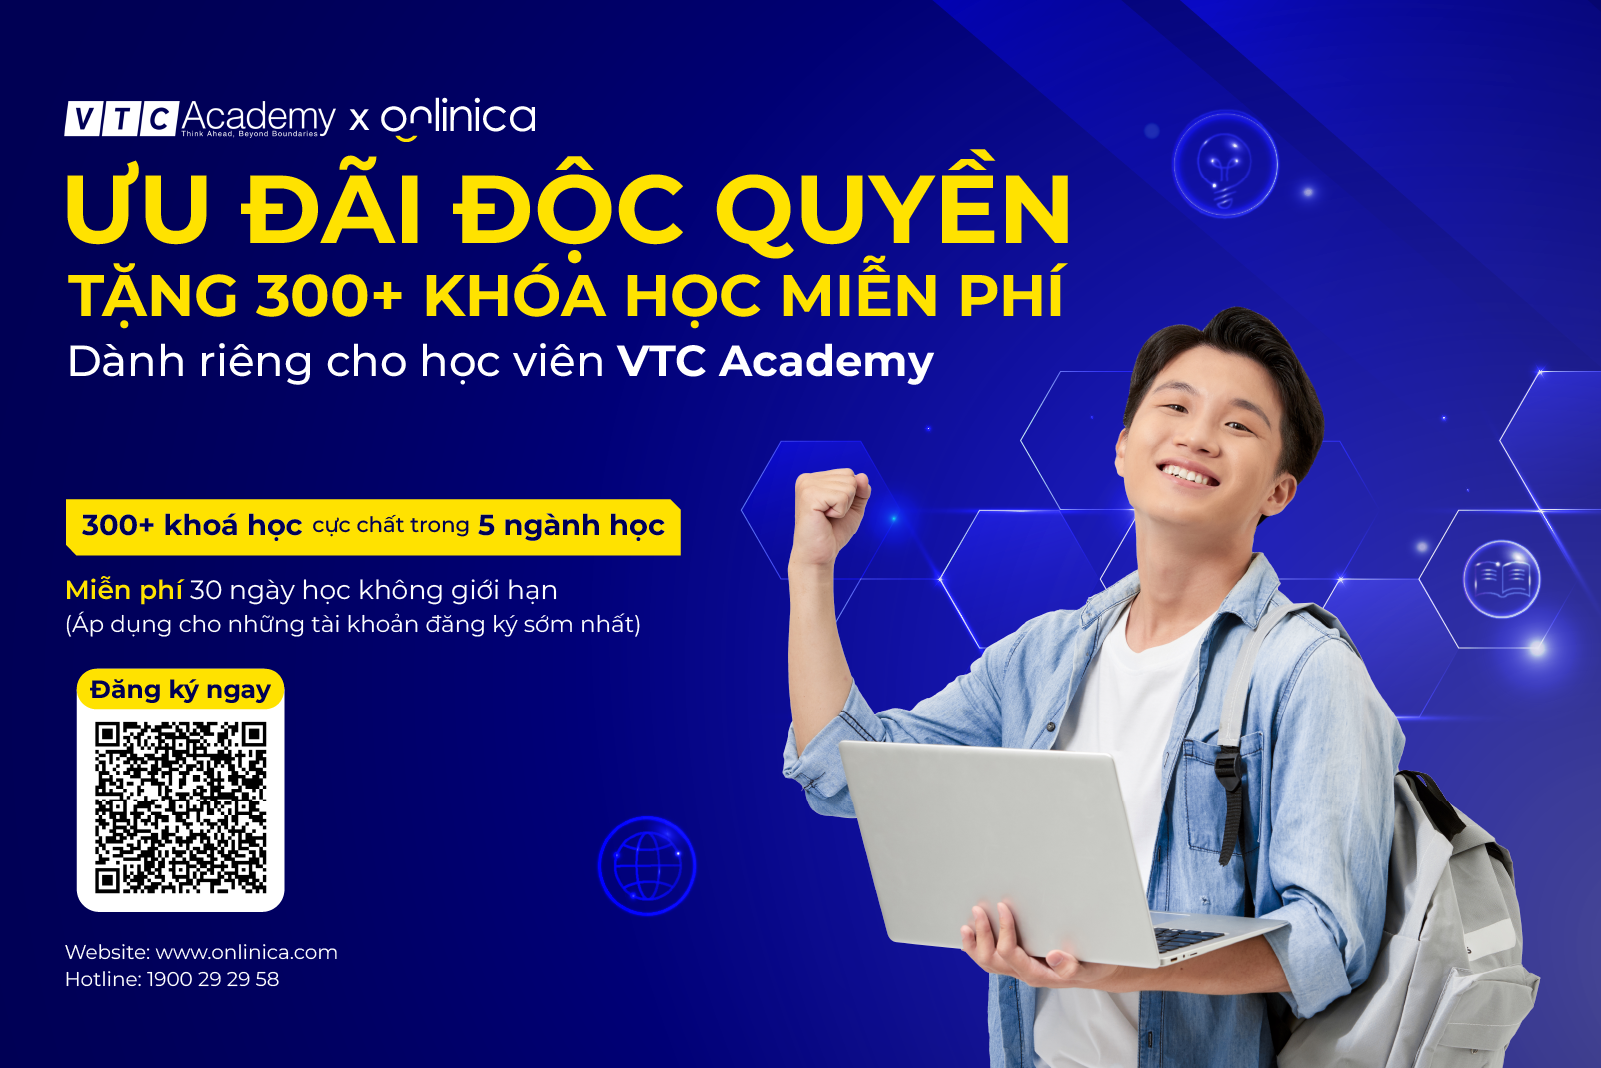 Ưu đãi độc quyền từ Onlinica: Tặng 300+ khóa học E-Learning miễn phí dành riêng cho học viên của VTC Academy